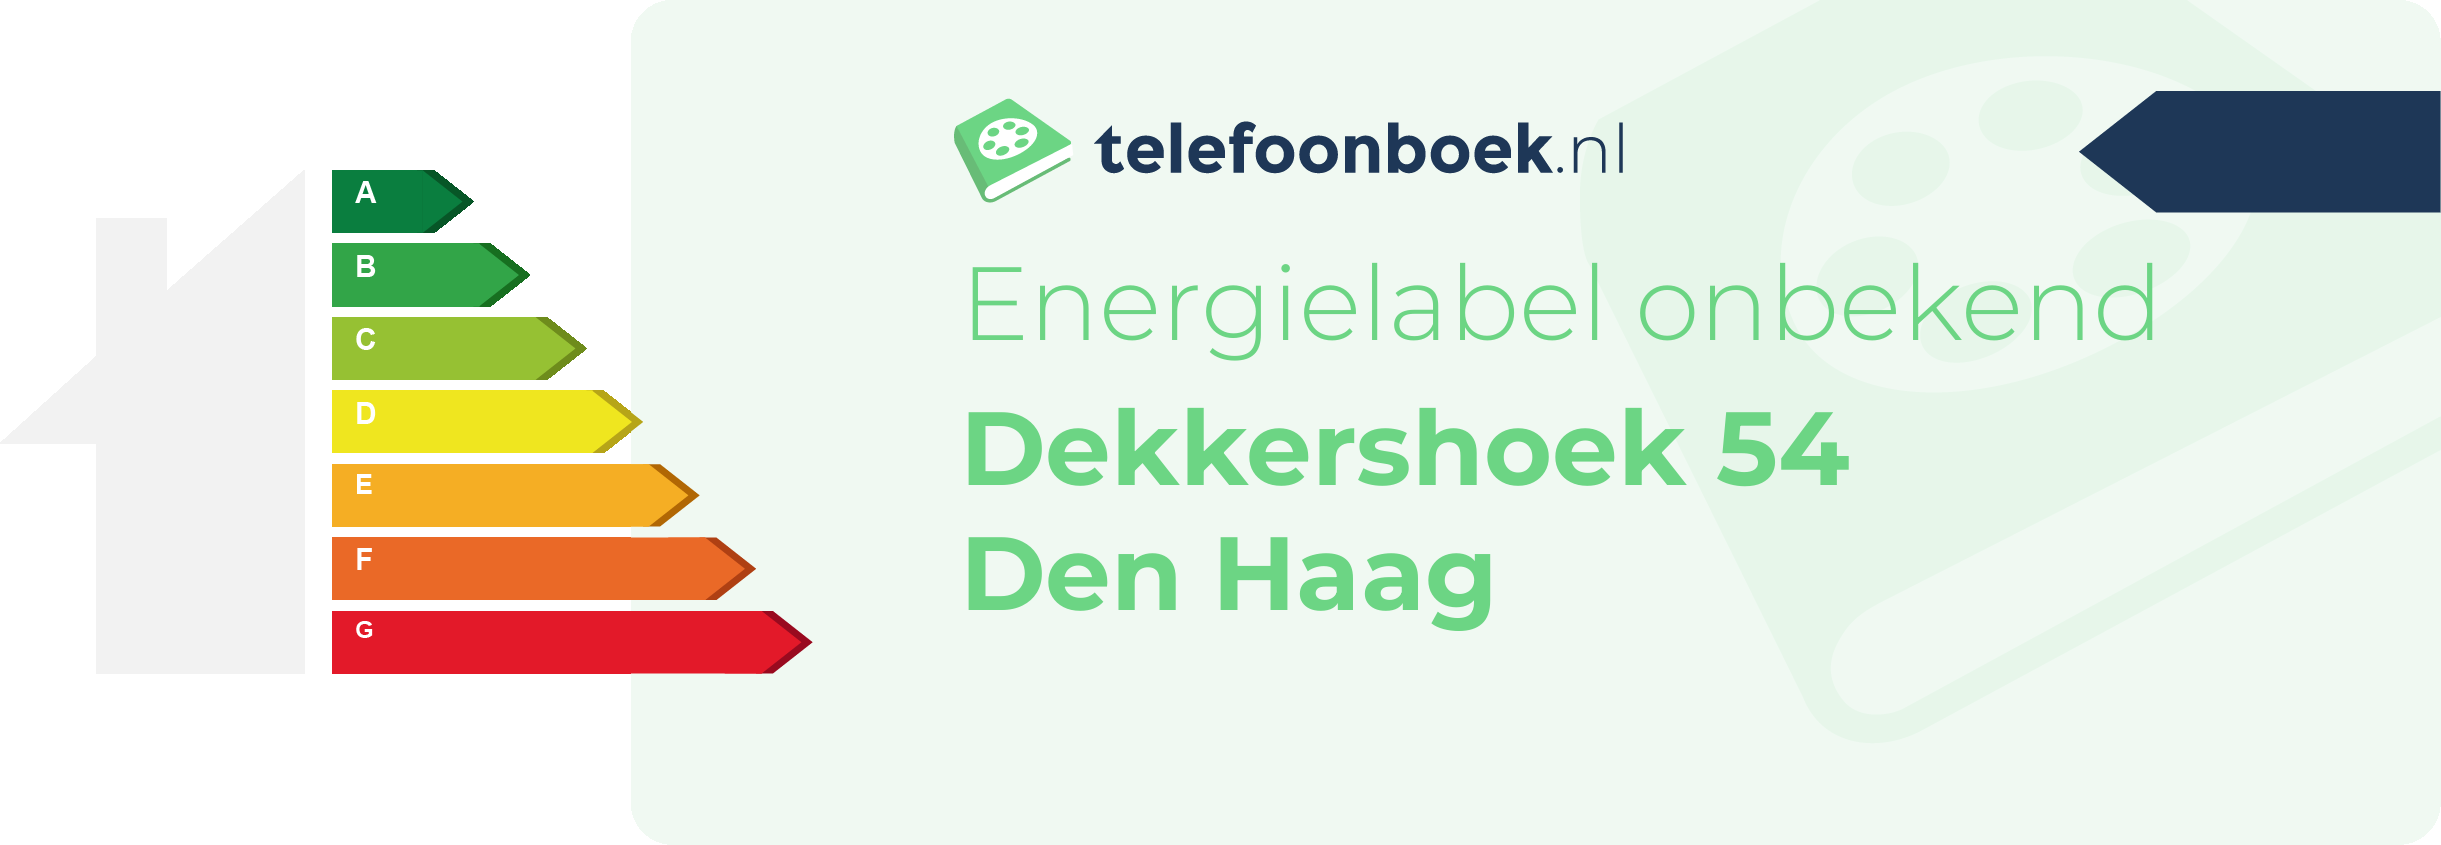 Energielabel Dekkershoek 54 Den Haag